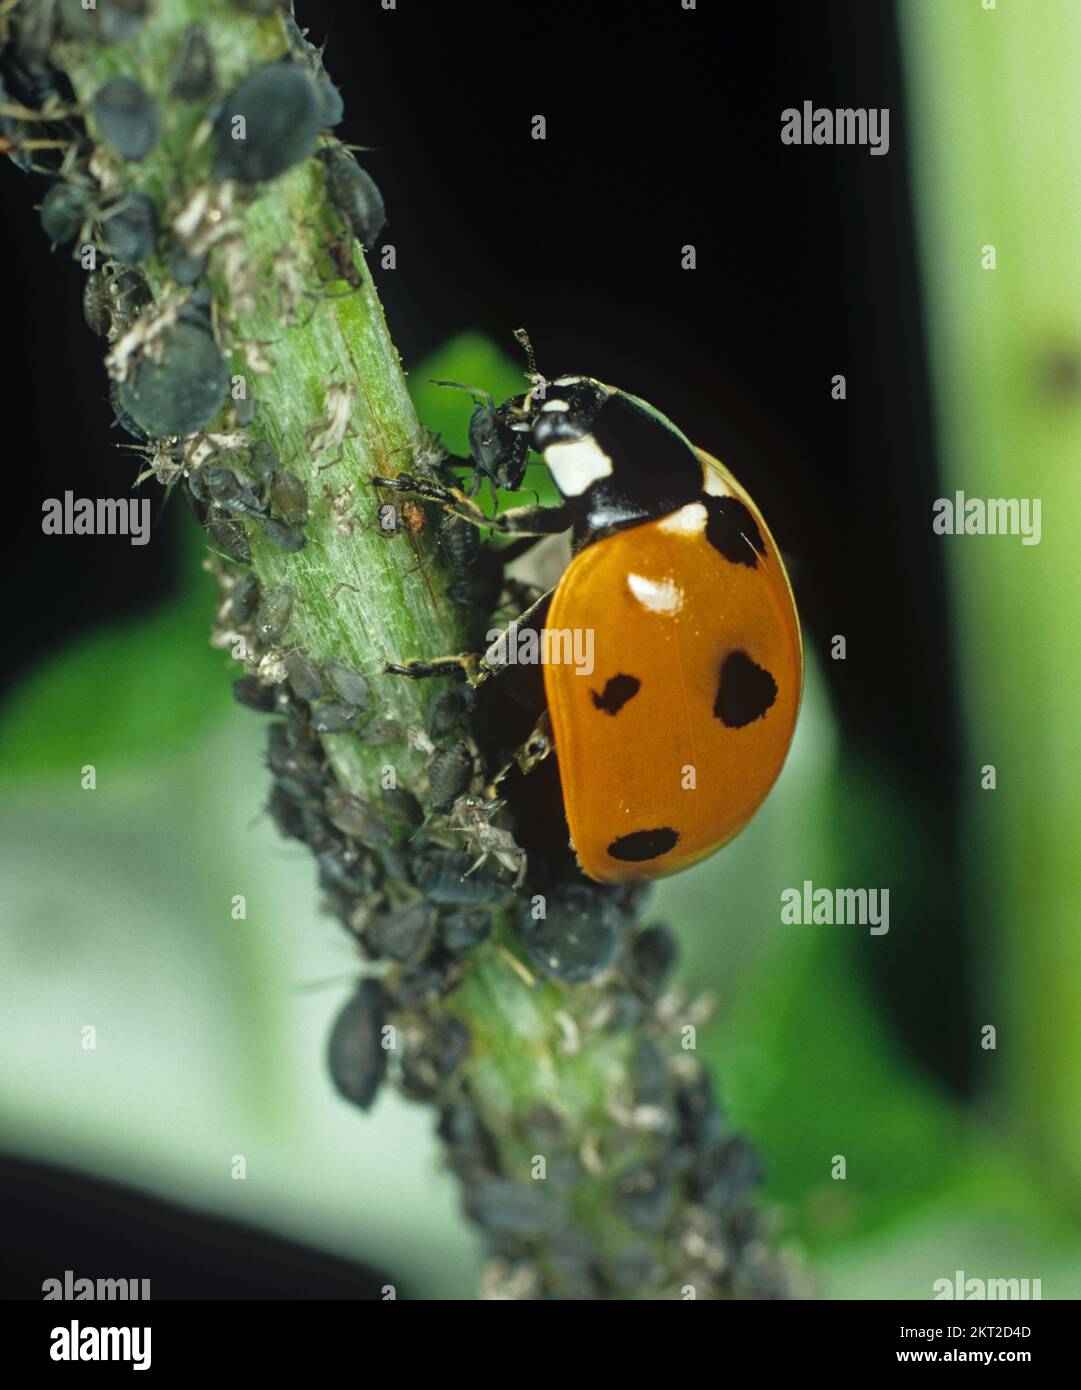 Mariquita de siete manchas (Coccinella septumpiunctata) Predador de escarabajo que se alimenta de plagas de áfidos de frijol negro (APHIS fbae) Foto de stock